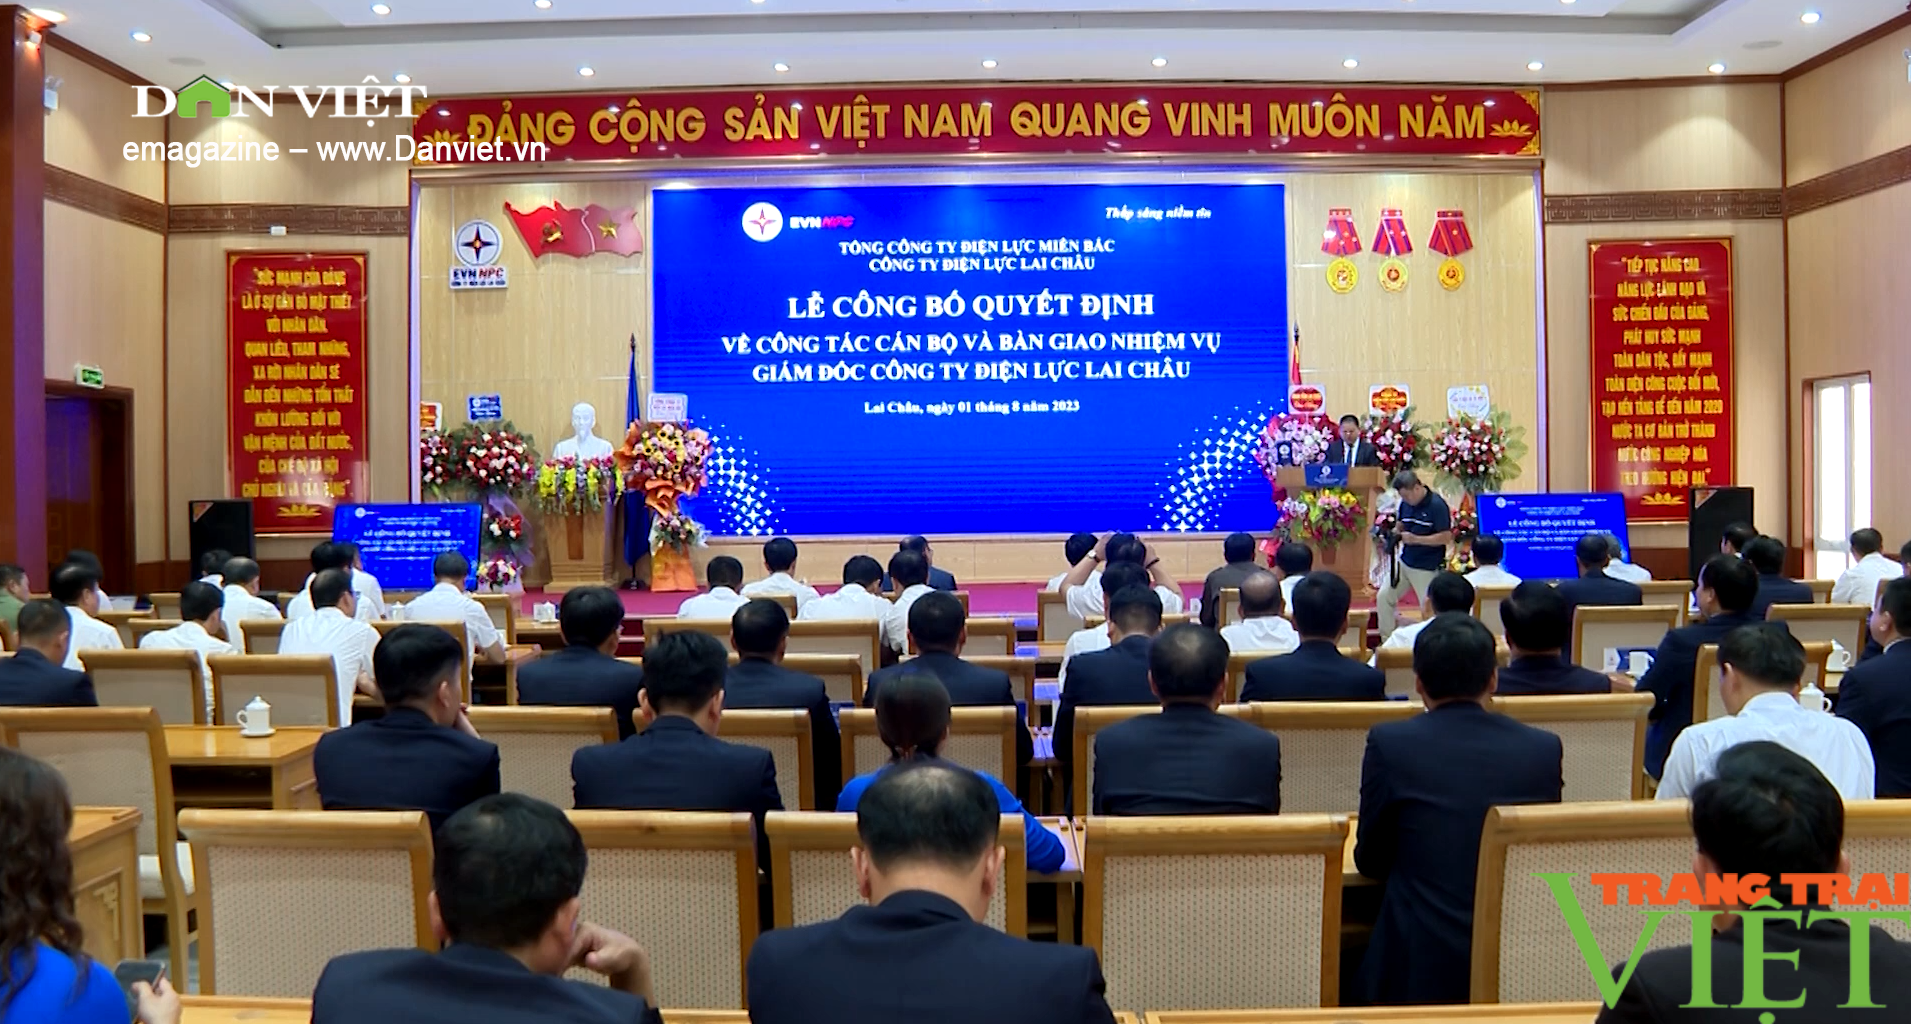 Ông Trần Kim Long được bổ nhiệm giữ chức Giám đốc Công ty Điện lực Lai Châu - Ảnh 3.